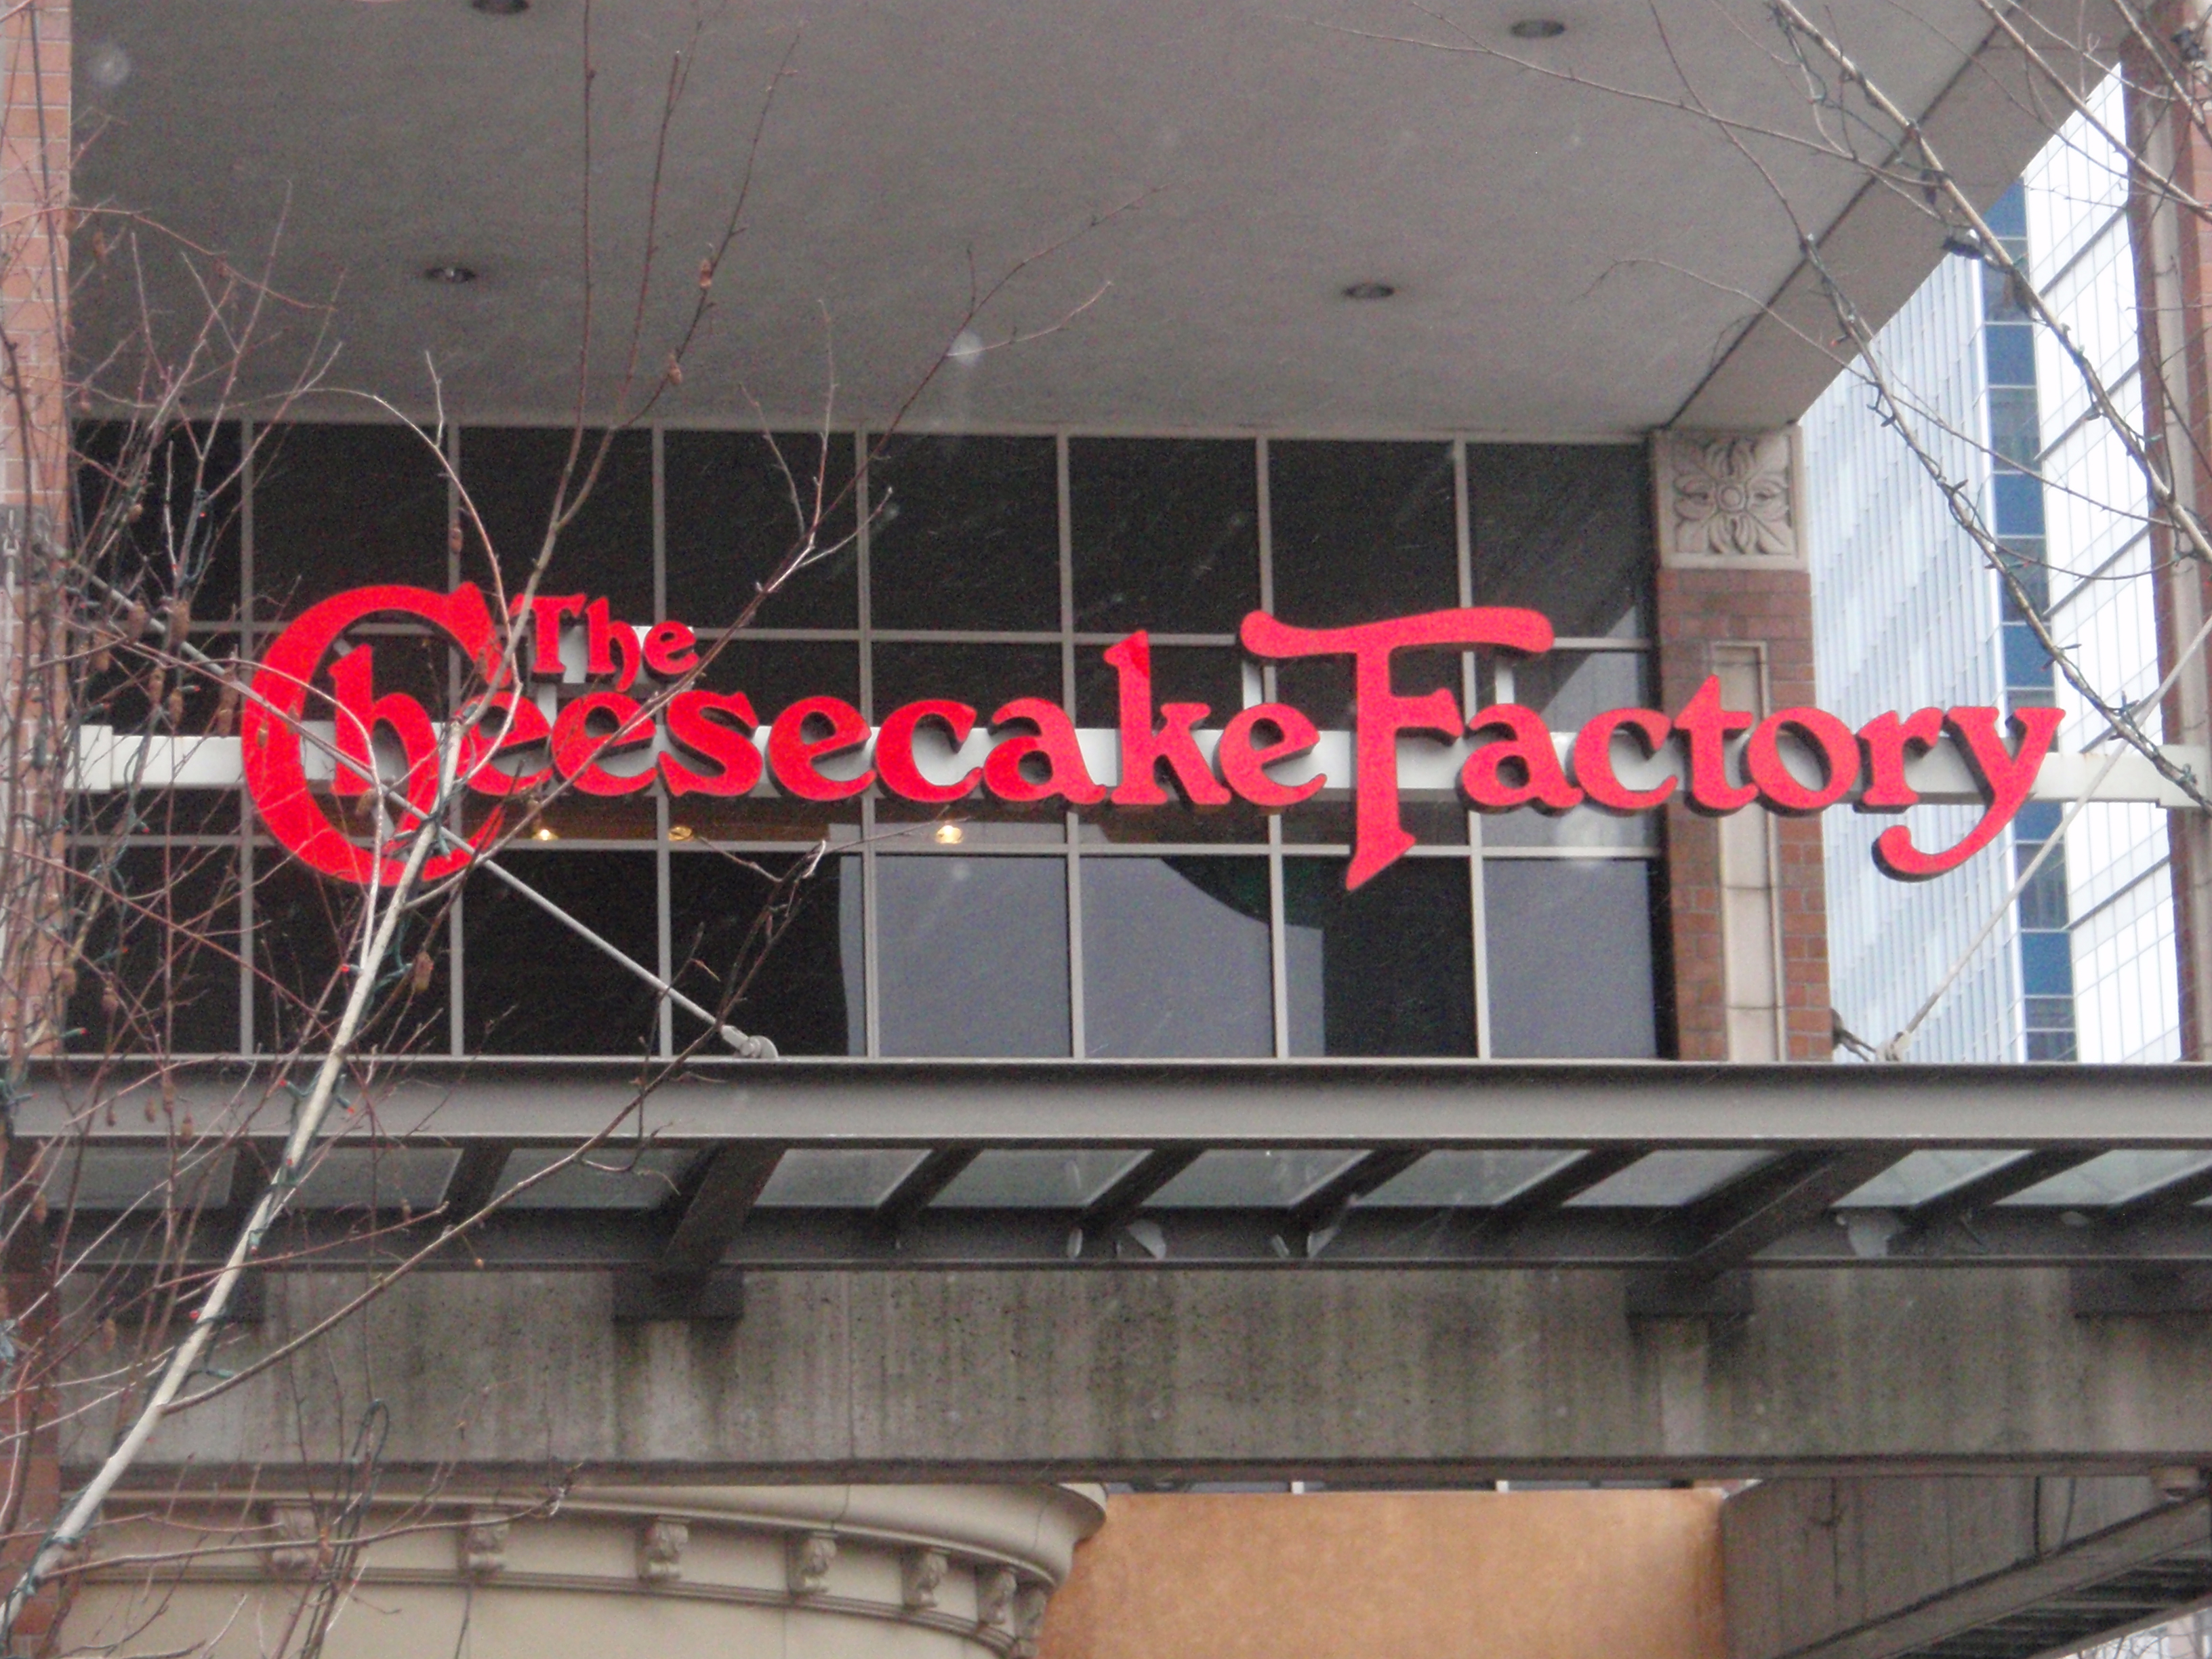 Une photographie montre un grand panneau de la Cheesecake Factory accroché au-dessus de l'entrée d'un bâtiment.